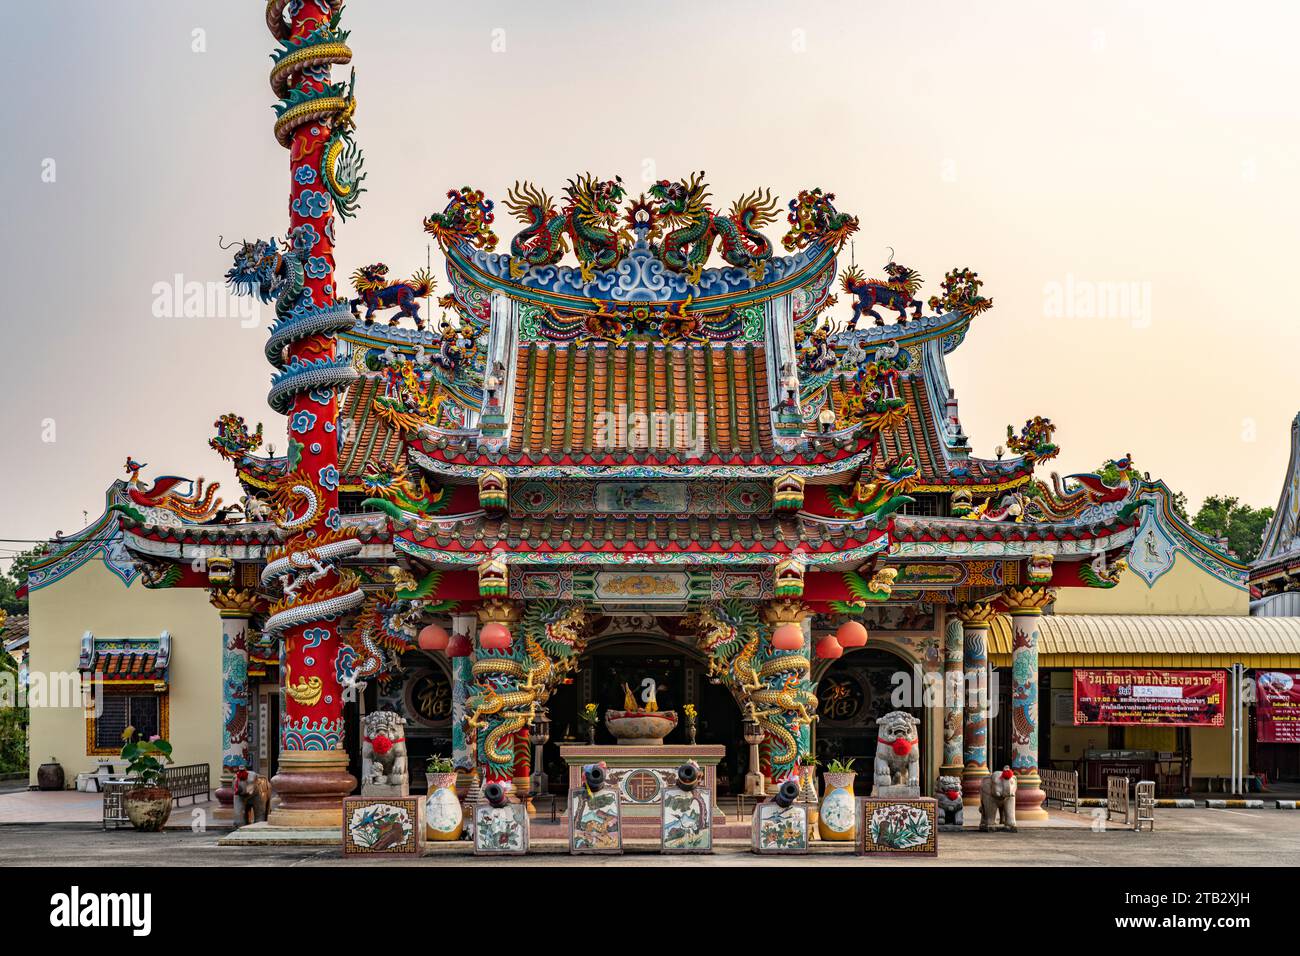 Der City Pillar Shrine im chinesischem Stil in Trat, Thailand, Asien   |  The Chinese style City Pillar Shrine in Trat, Thailand, Asia Stock Photo